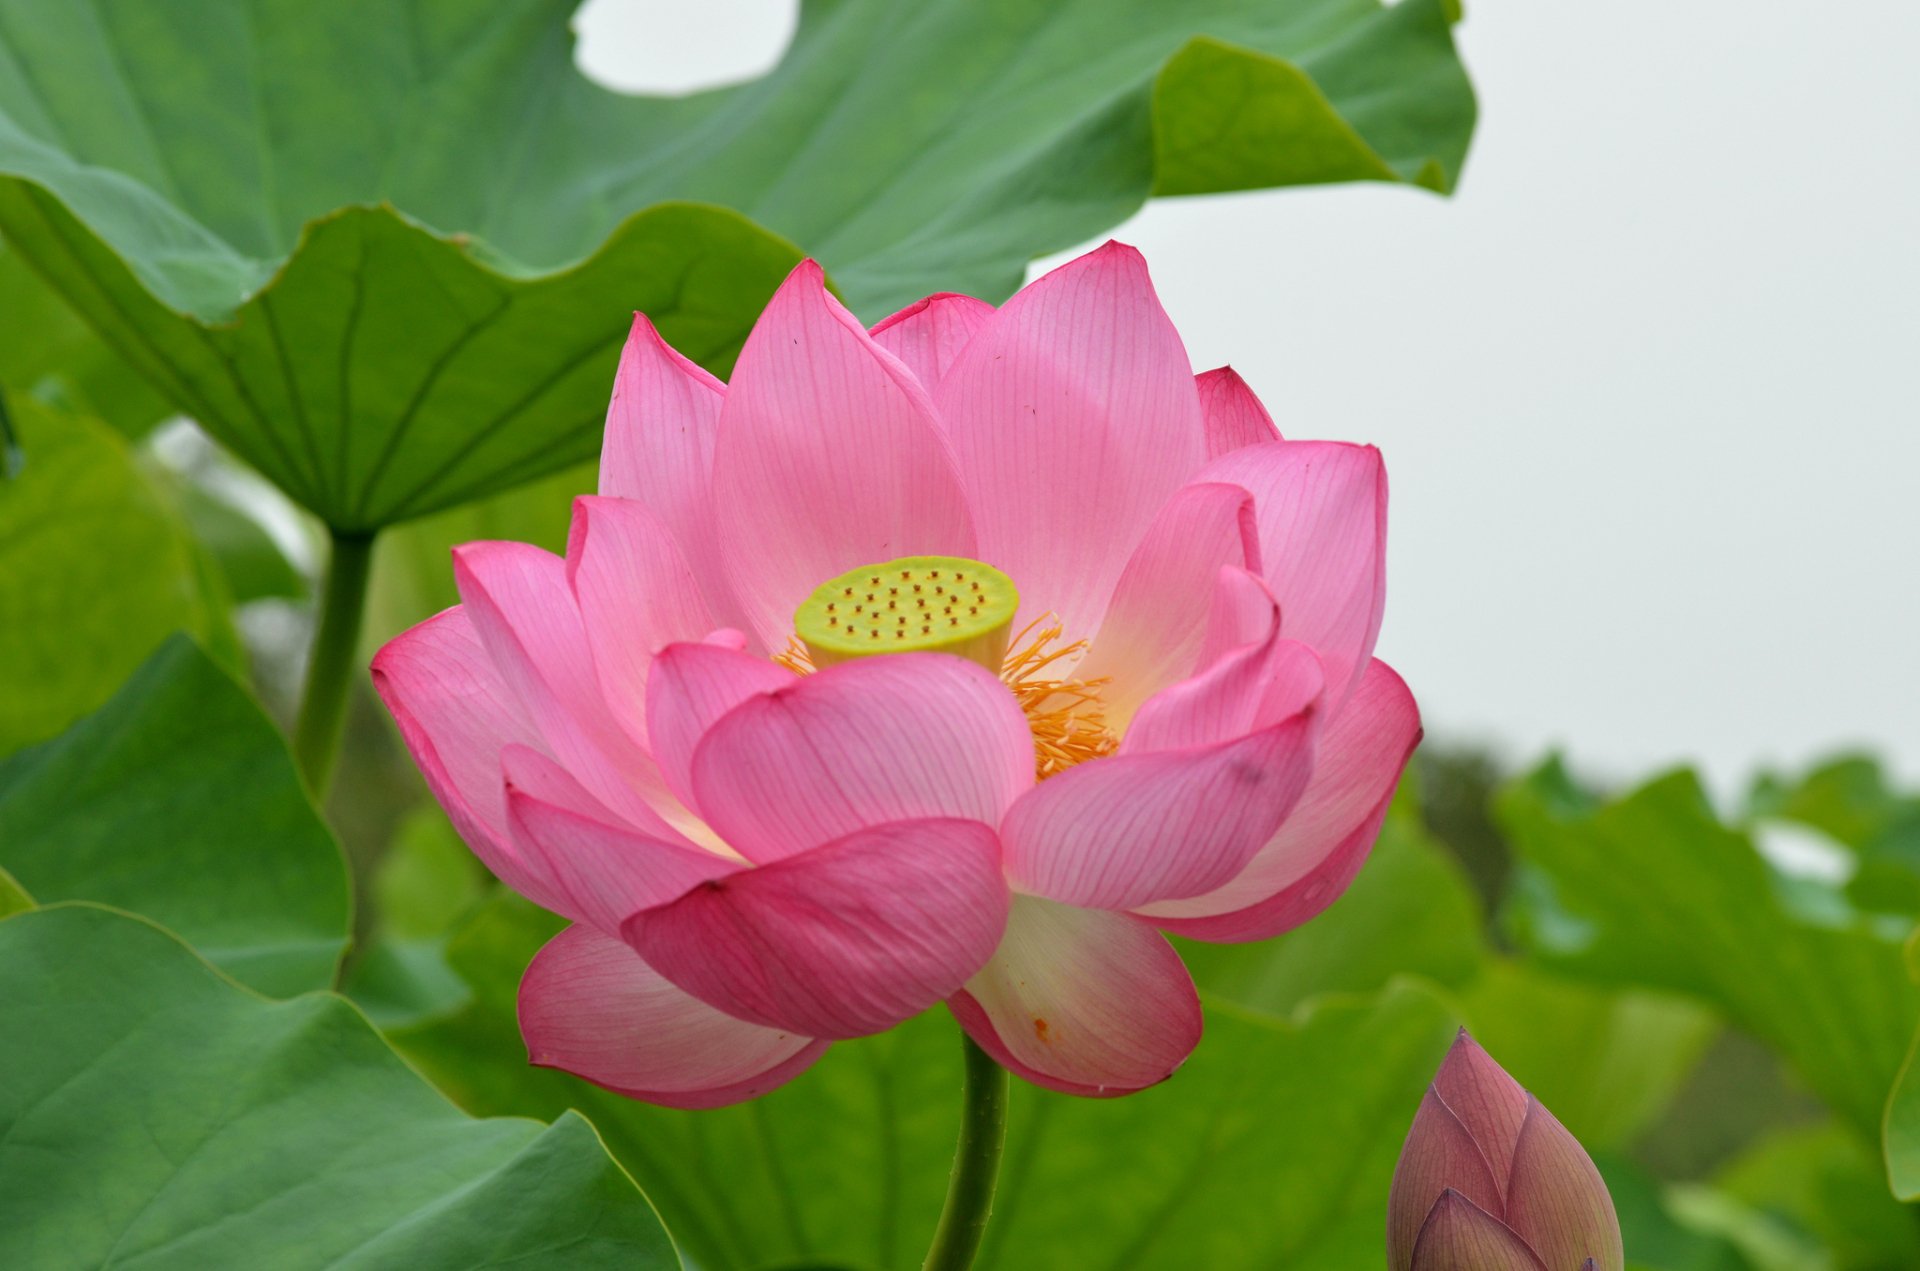 Bạn đang tìm kiếm một hình nền hoa sen cao cấp? Đừng bỏ lỡ những hình ảnh Lotus HD với độ phân giải tuyệt vời. Làm mới màn hình của bạn với những bức ảnh hoa sen tuyệt đẹp mà bạn không bao giờ muốn lỡ đi.